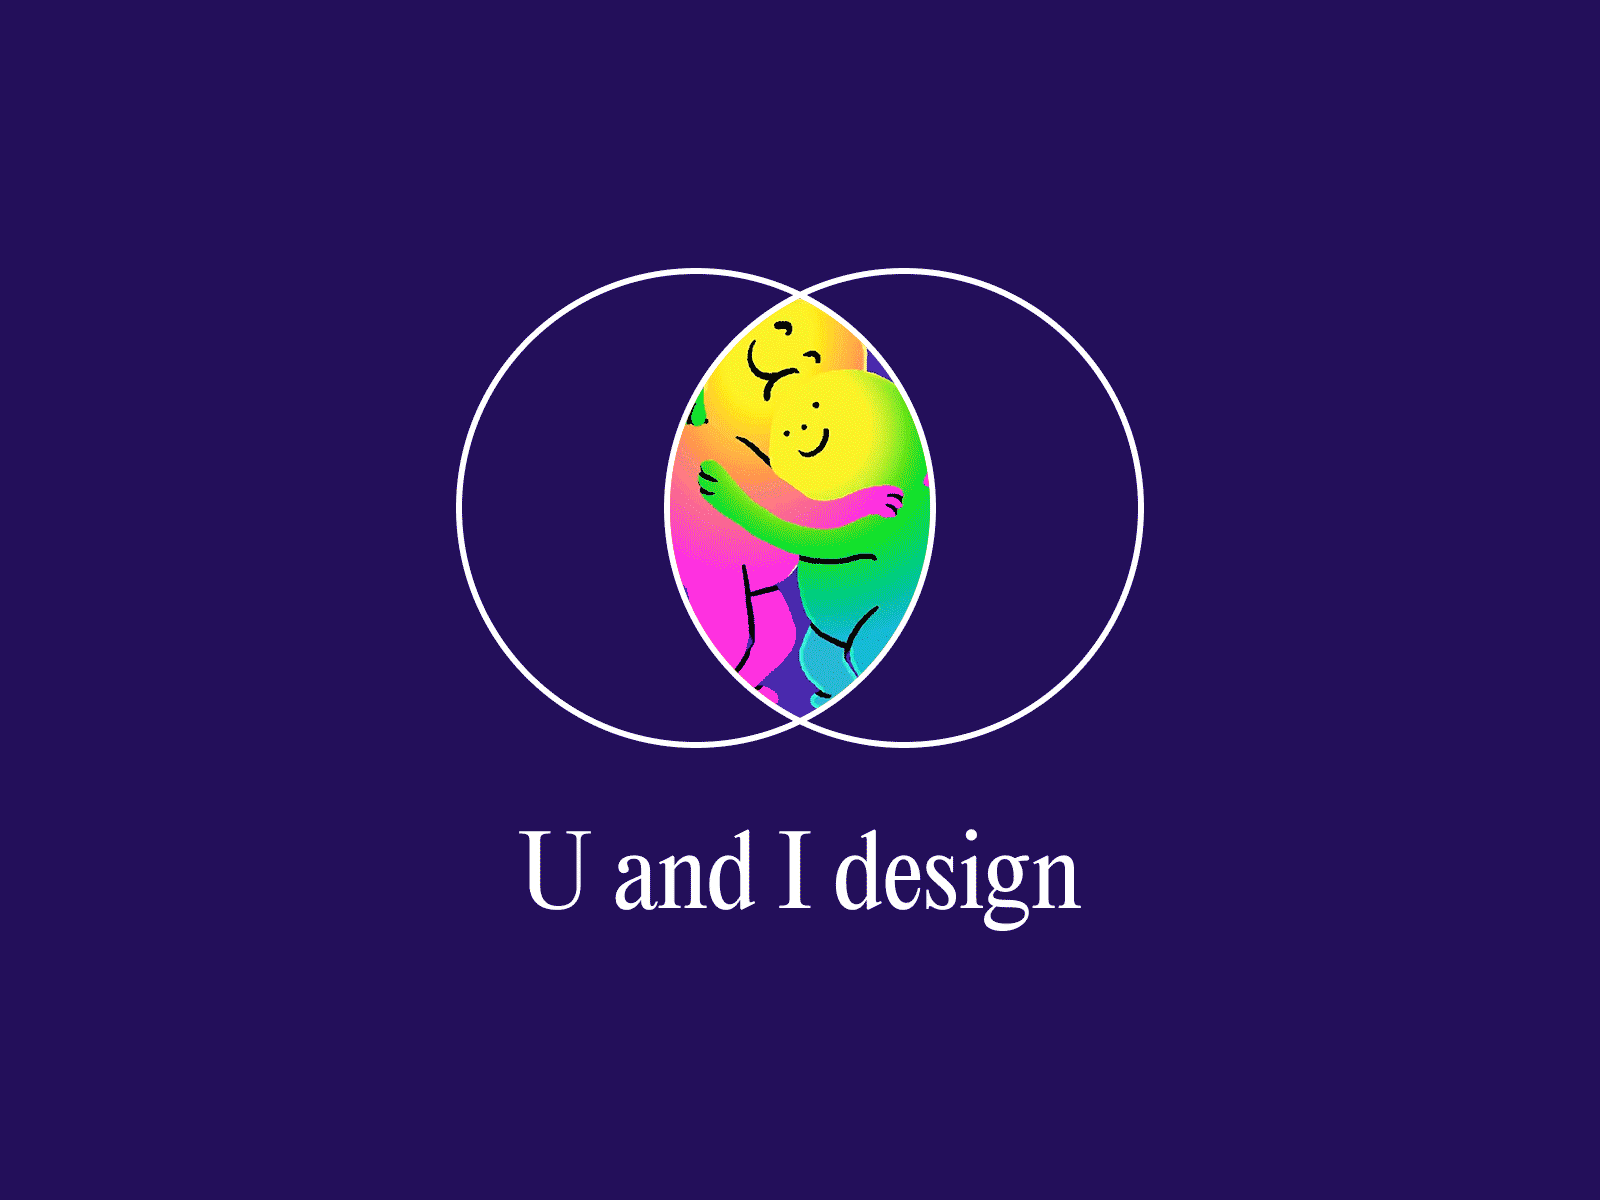 U and I design